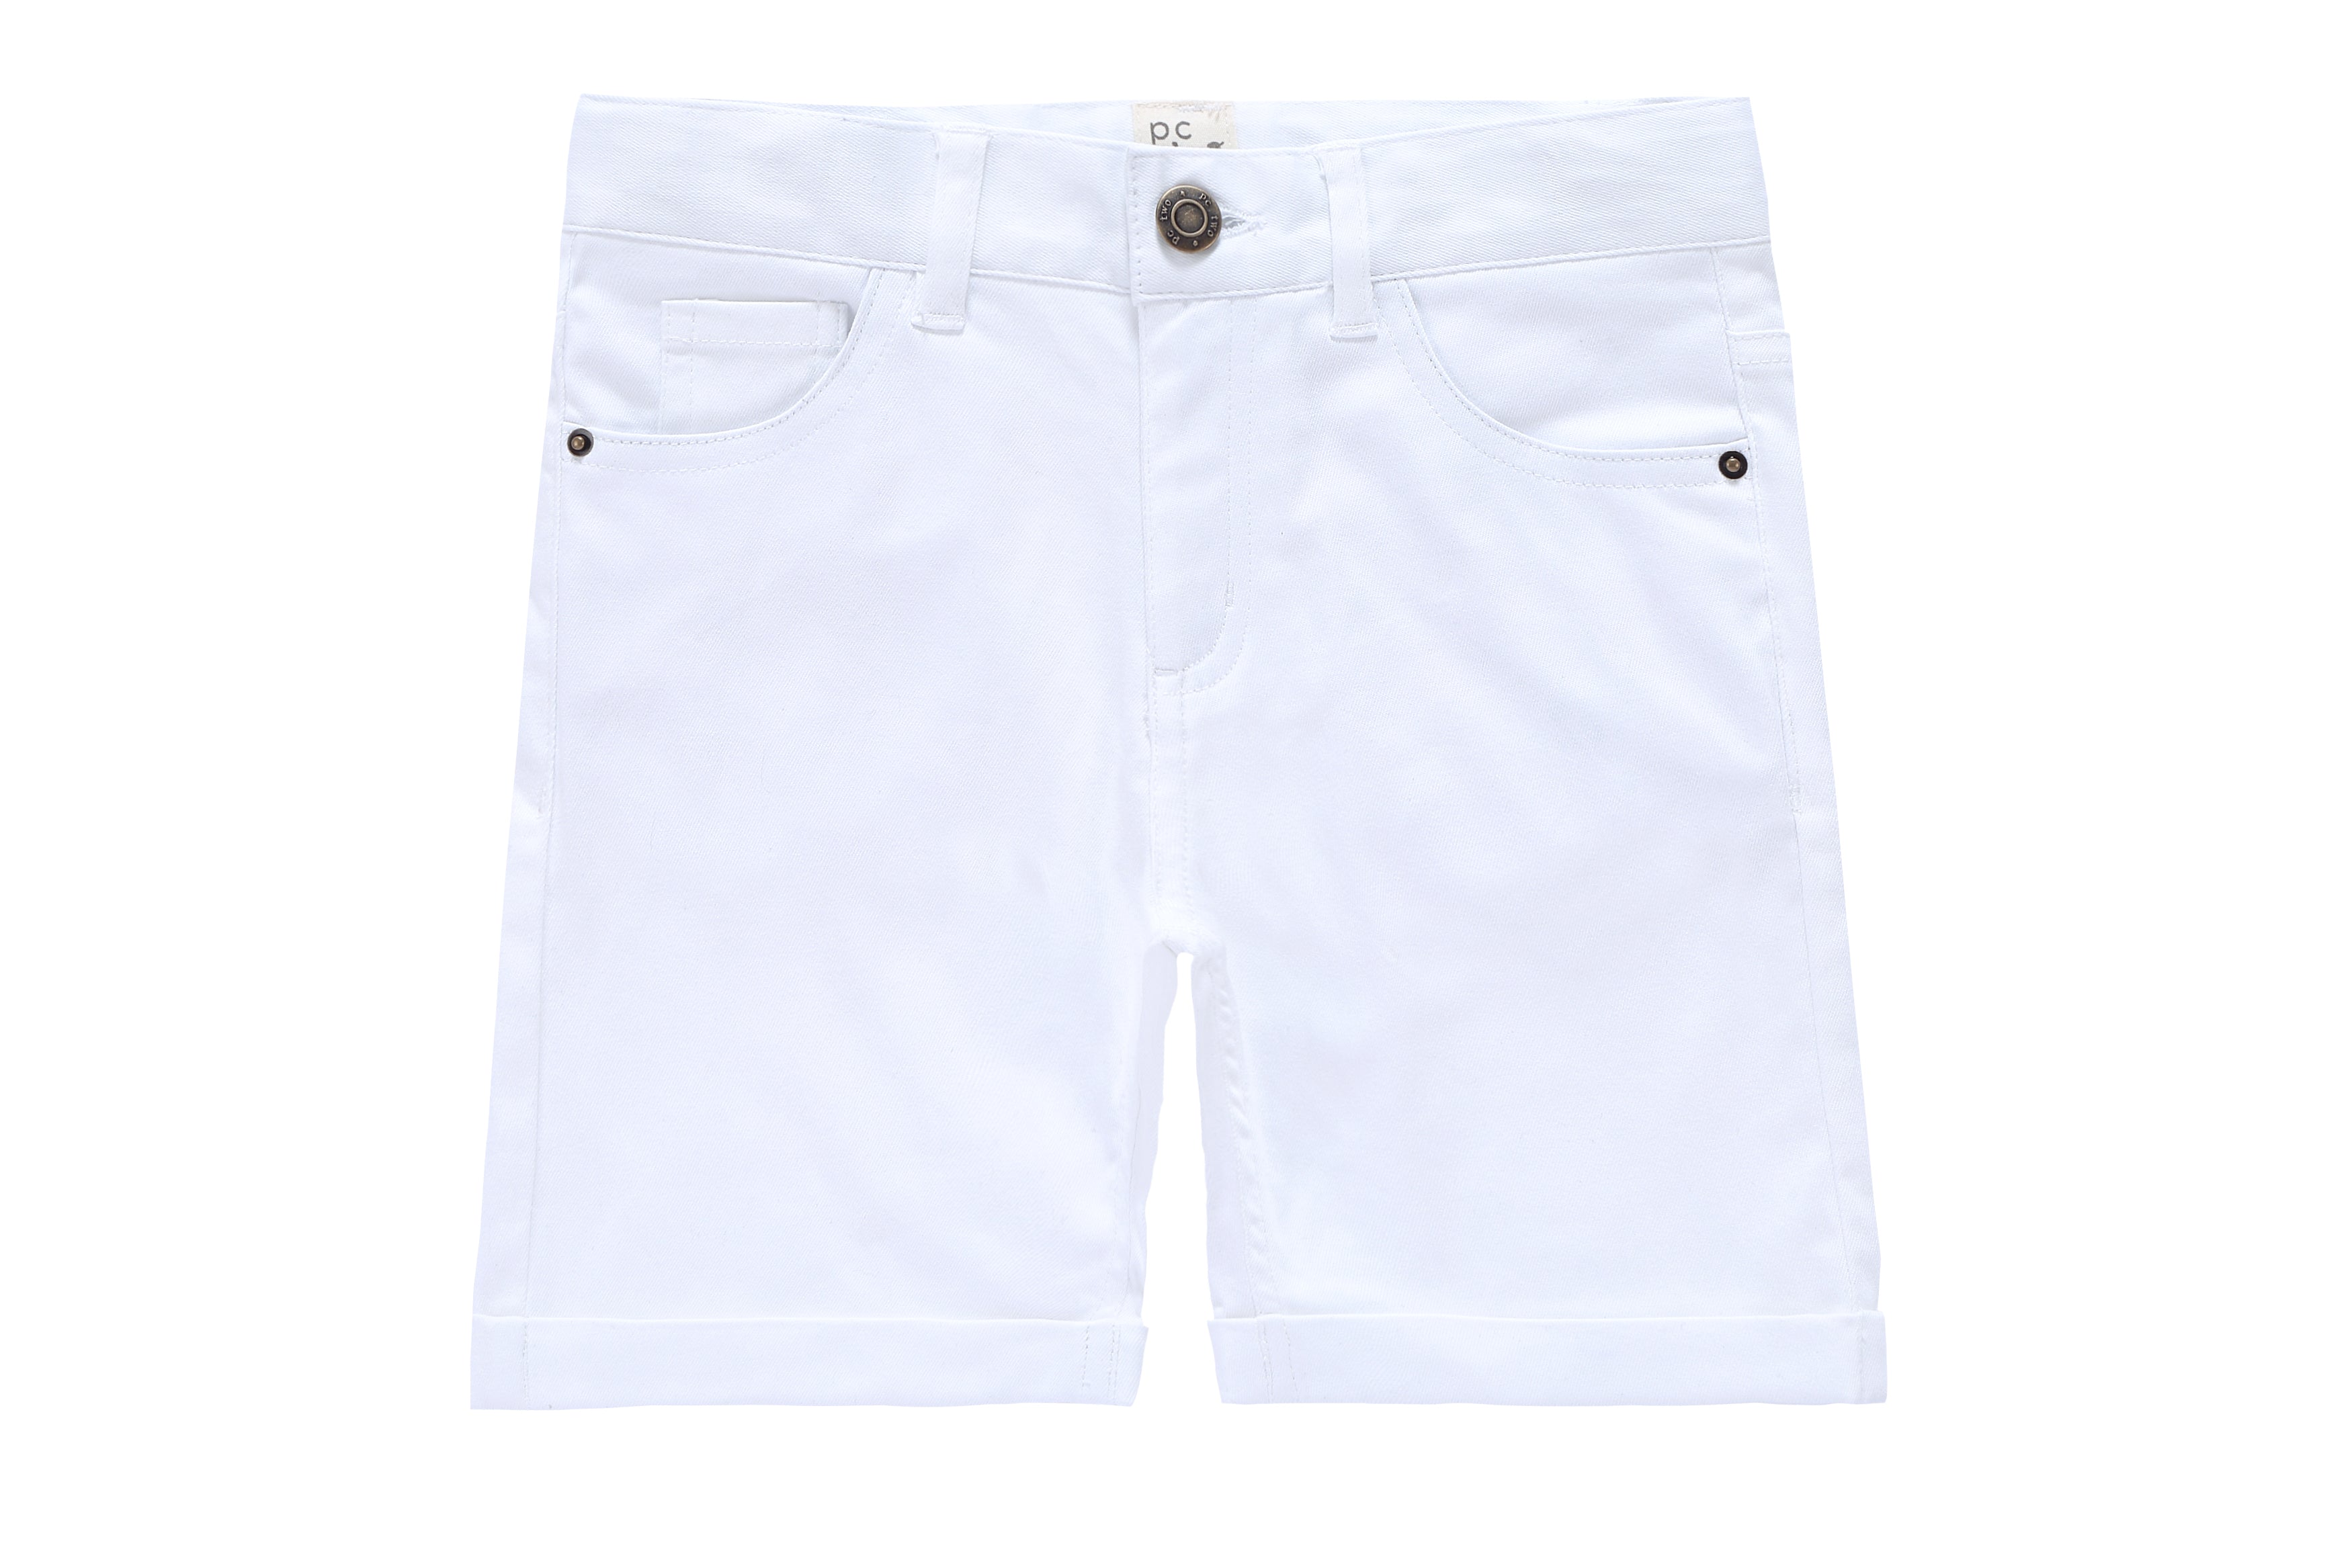 White Denim Shorts